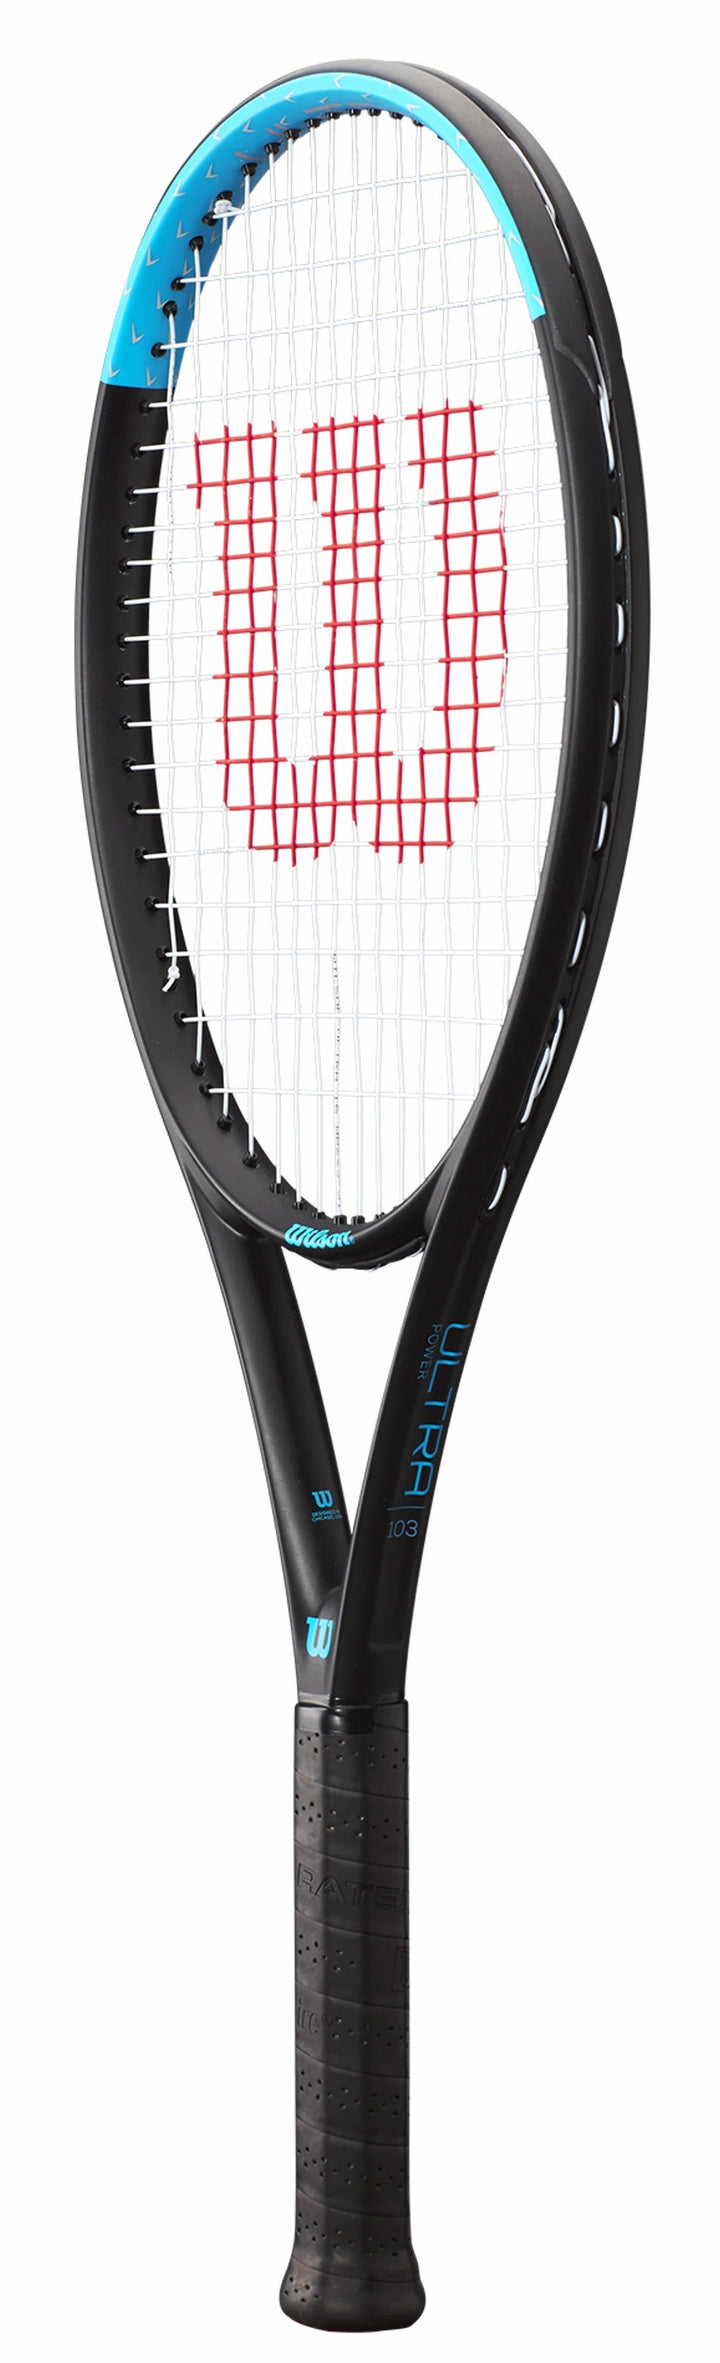 Wilson Ultra Power 103 Tennis Racquet Strung Tennis racquets Wilson 